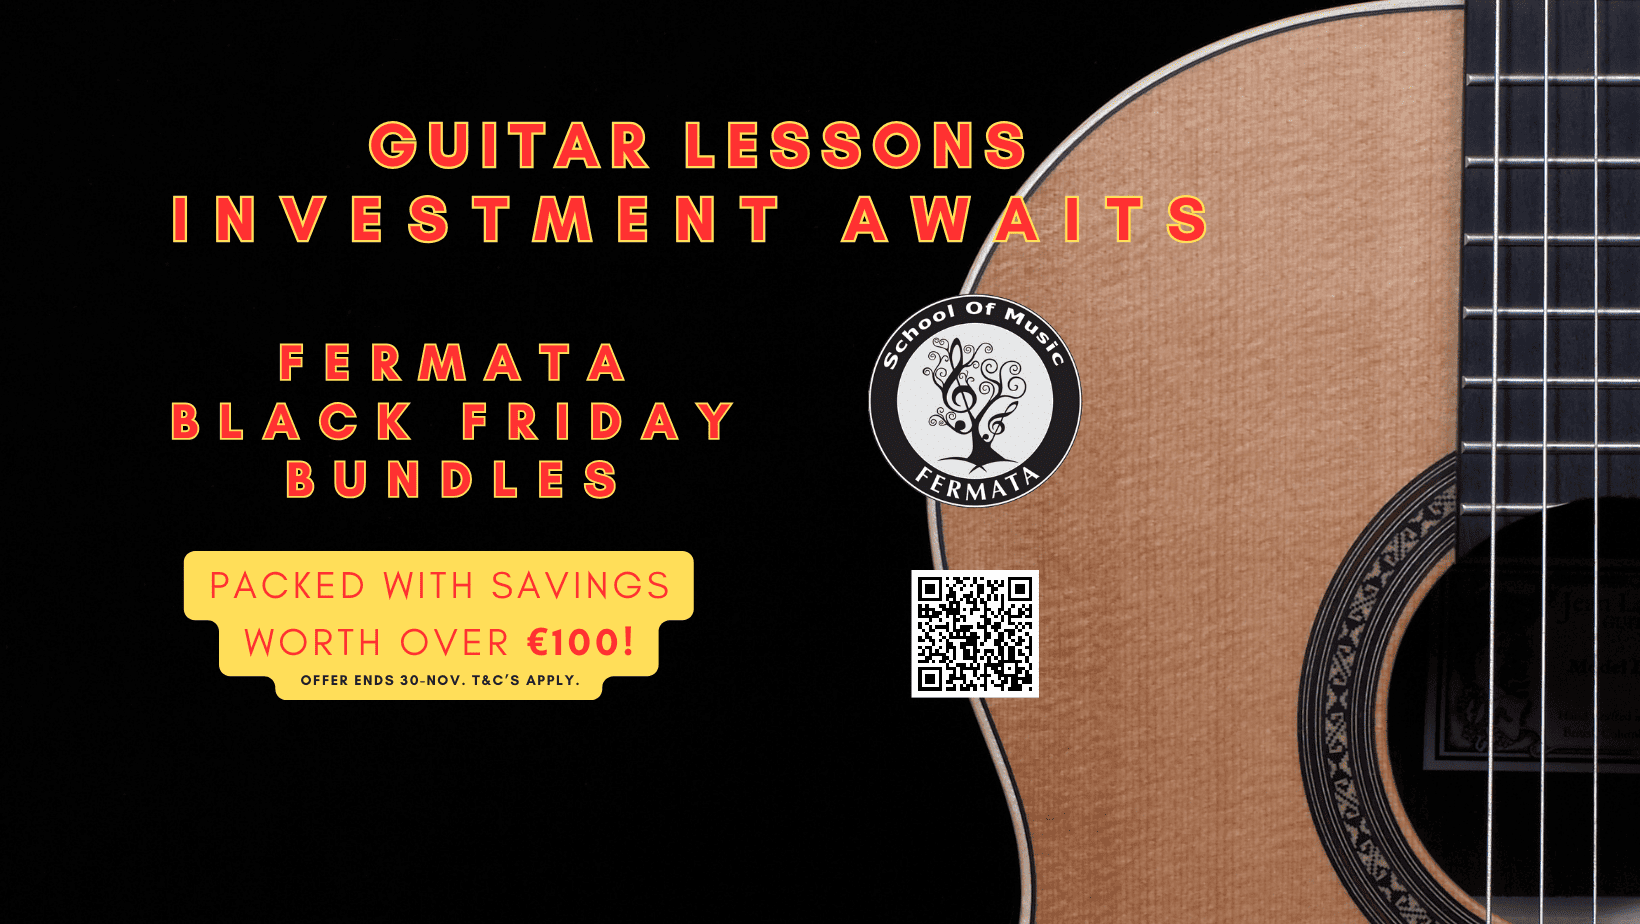 Fermata_Black Friday_Guitar Lessons_Bundle